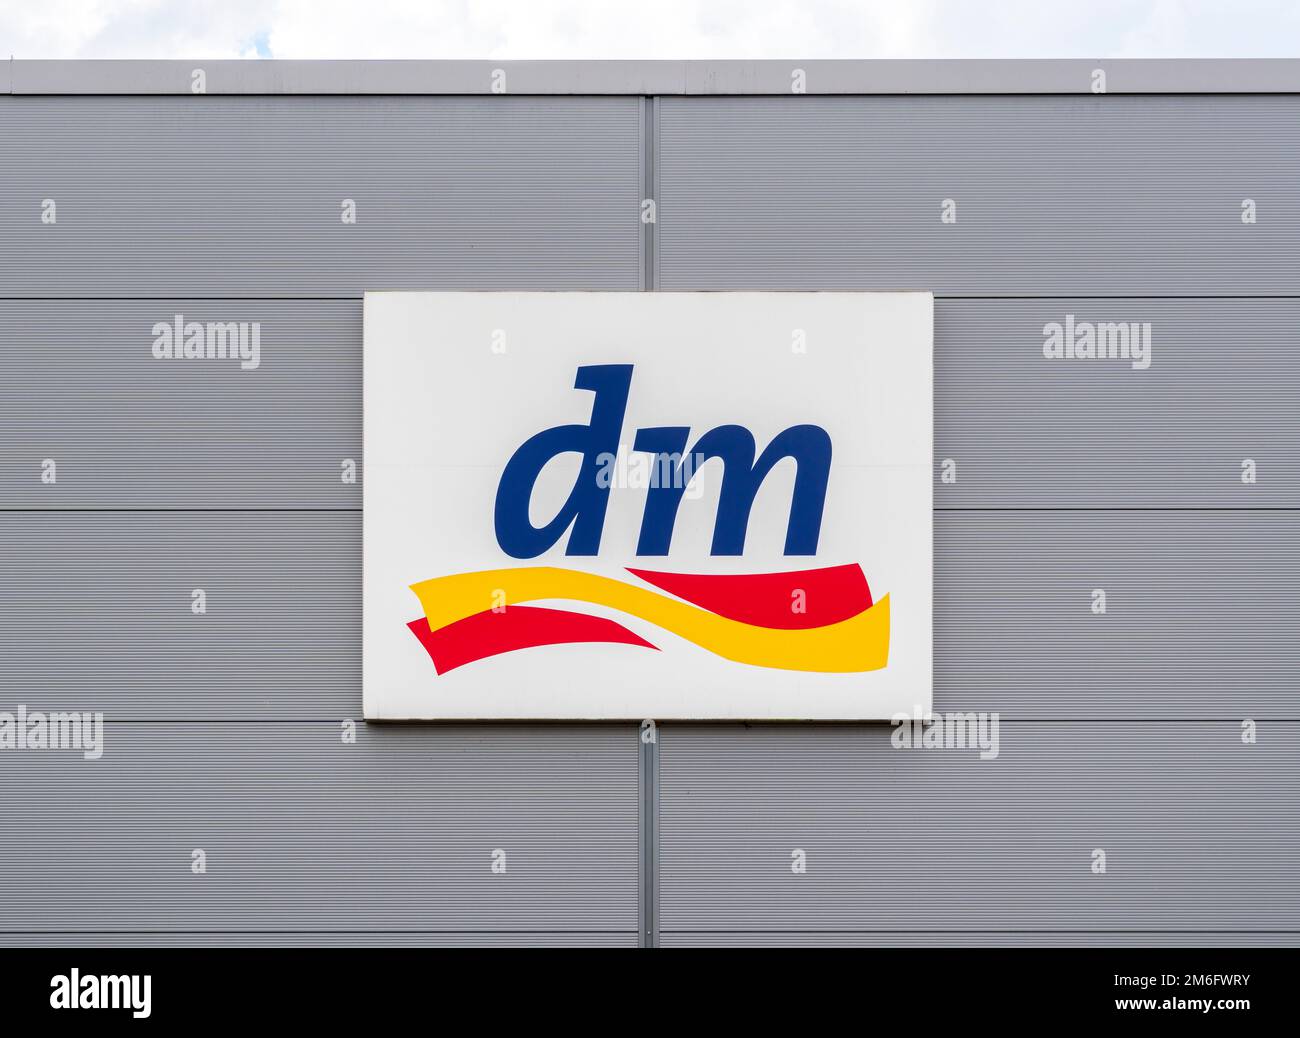 Dm dm markt -Fotos und -Bildmaterial in hoher Auflösung – Alamy